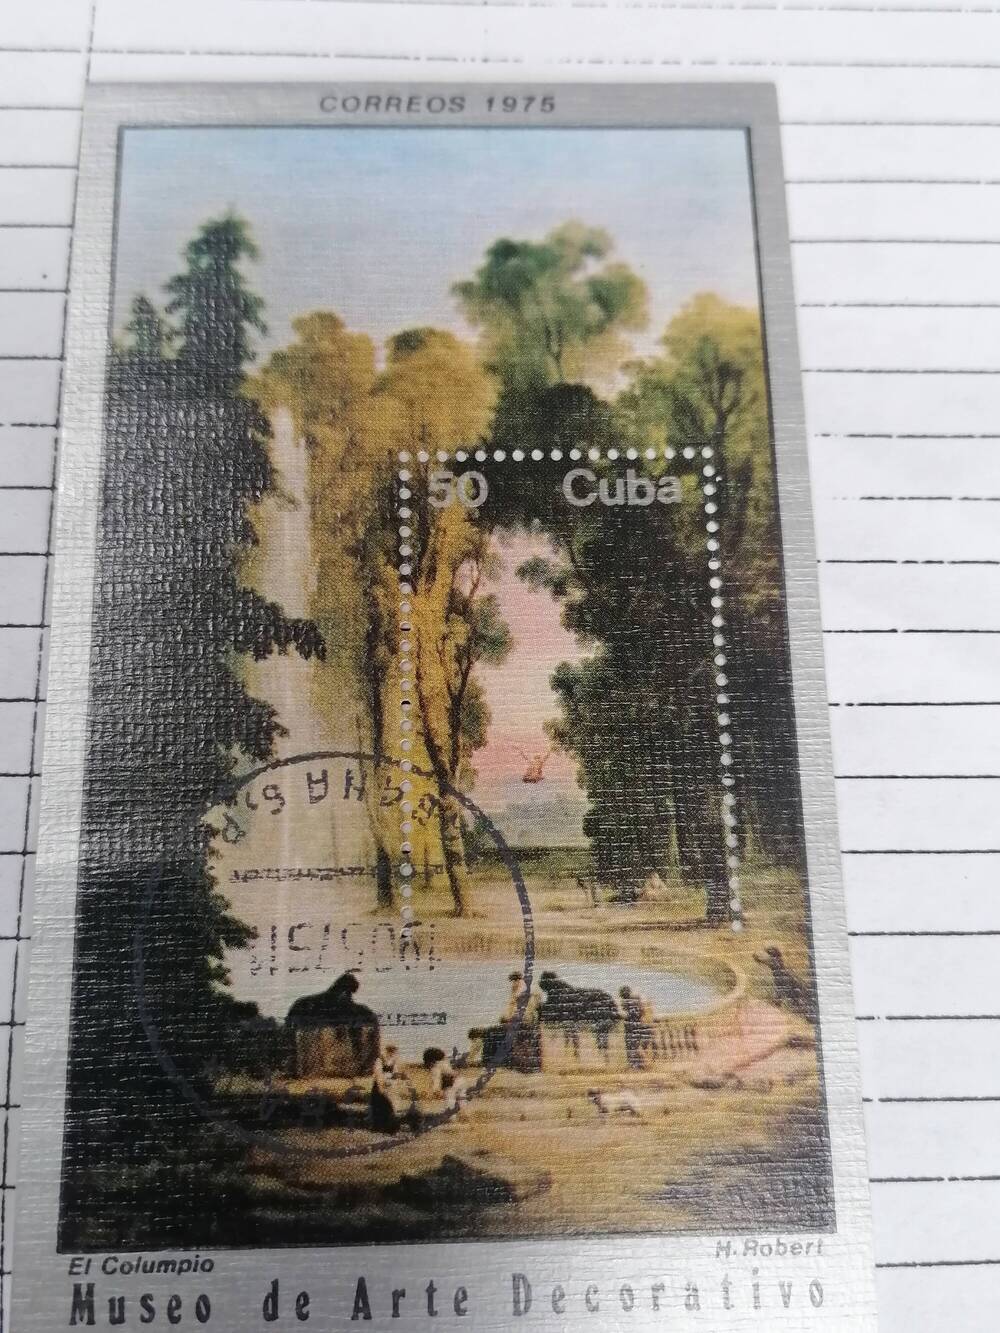 Марка почтовая гашеная, Cuba Correos,Куба,1975 г,Museo de Arte Decorativo. E.L.Columbio H.Robert